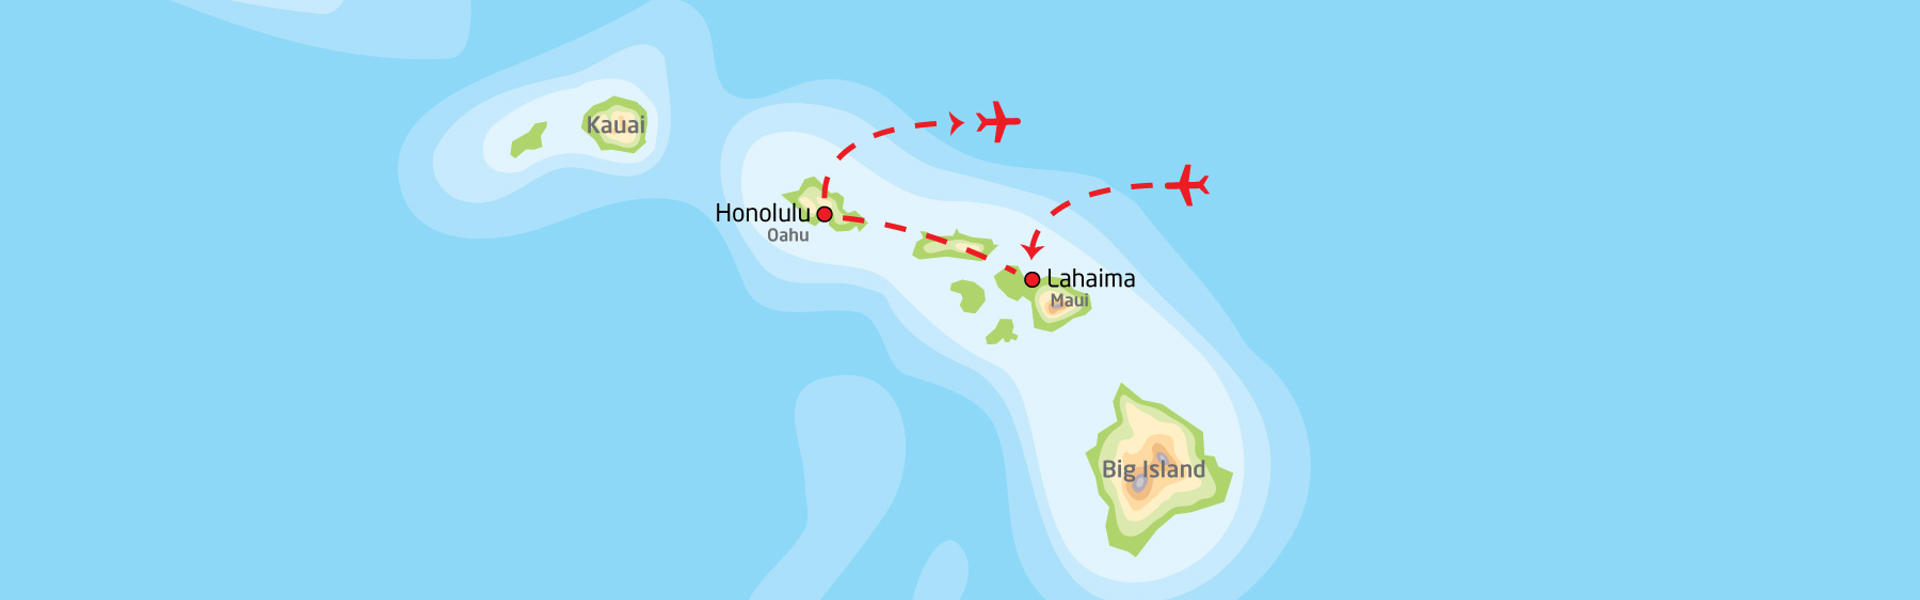 Hawaiis høydepunkter | Reiserute